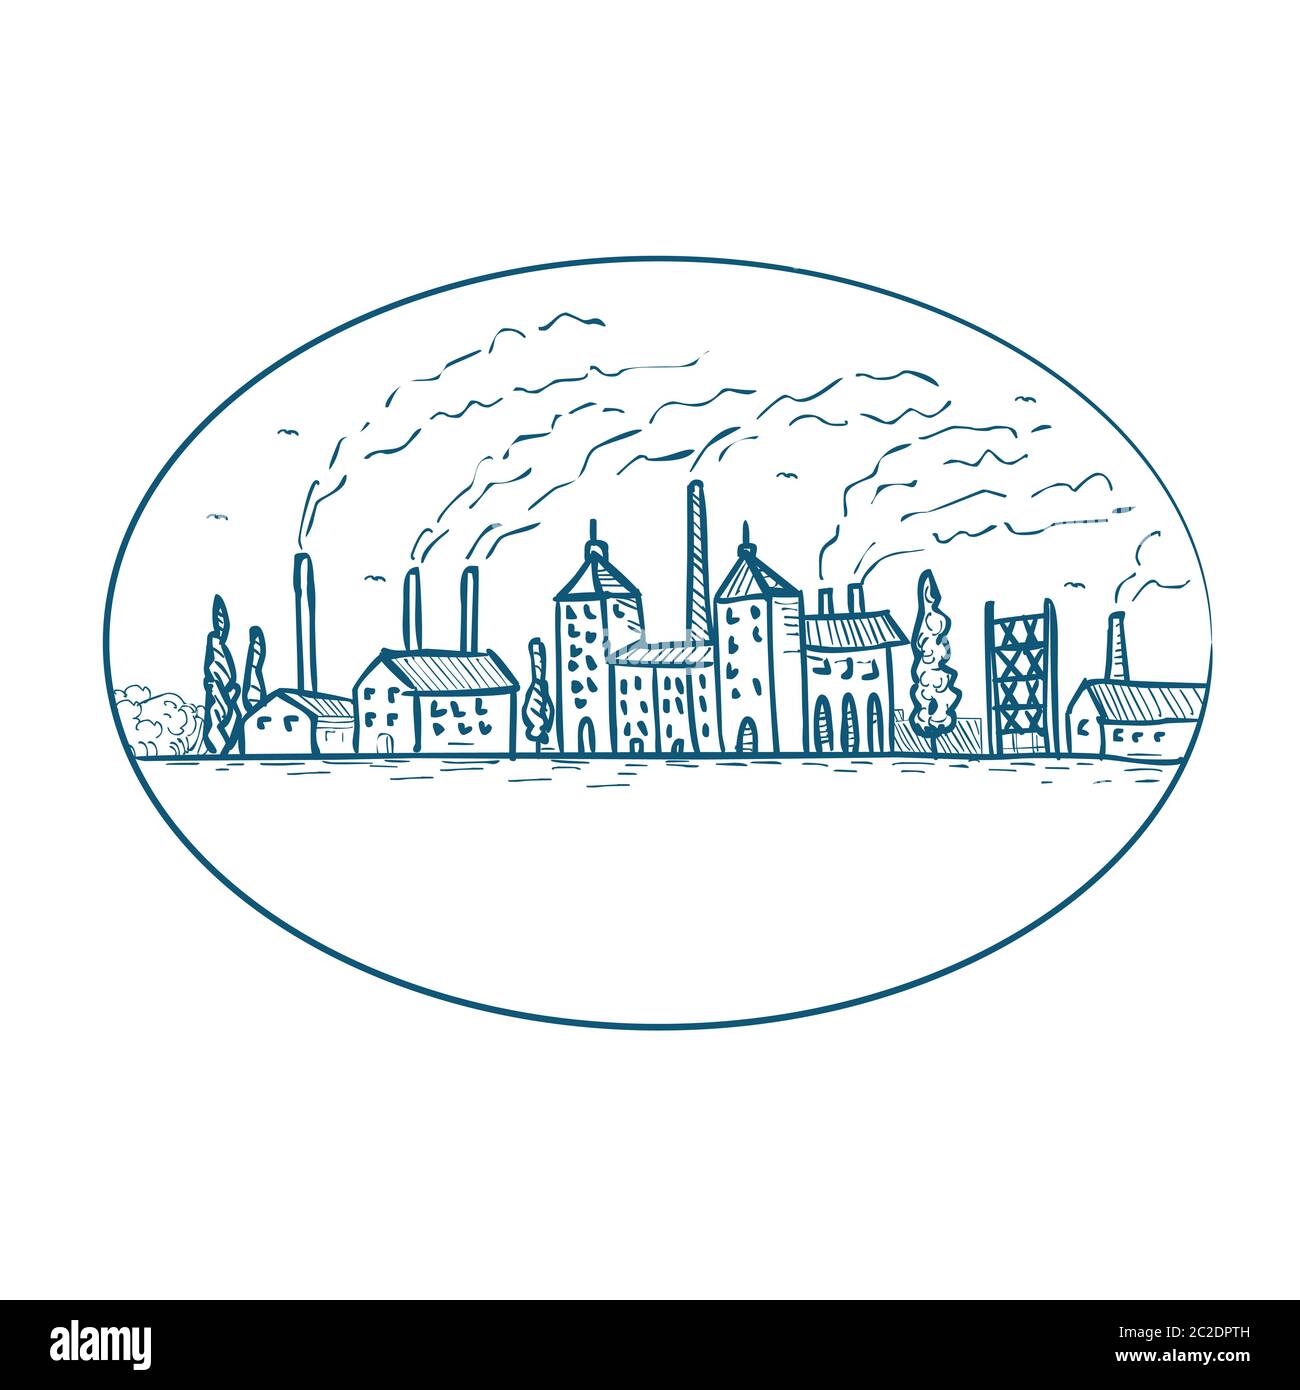 Dibujo de dibujo estilo ilustración de una revolución industrial paisaje de los años 1800 con fábrica, construcción, smokestack, chimenea, humo y aire pollut Foto de stock